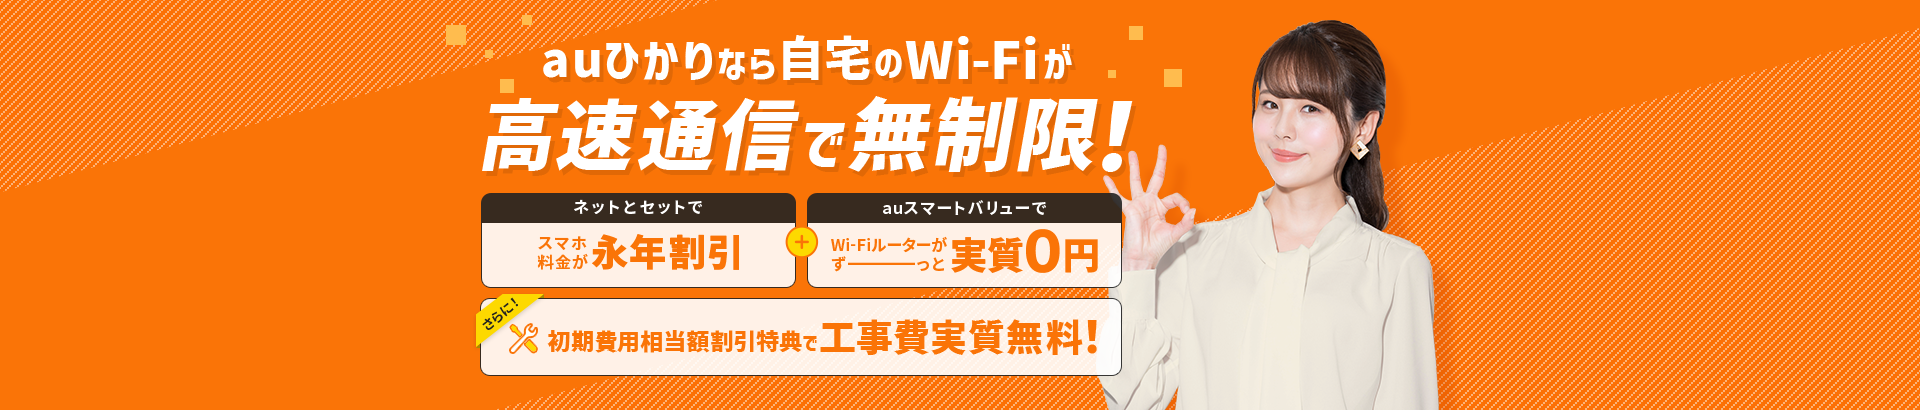 リモートワークも！動画やゲームも！auひかりのWi-Fiで快適インターネット！auひかりのWi-Fiなら！通信制限がいっさいなしで使い放題！auスマートバリュー適用でWi-Fiルーターレンタル料永年無料！